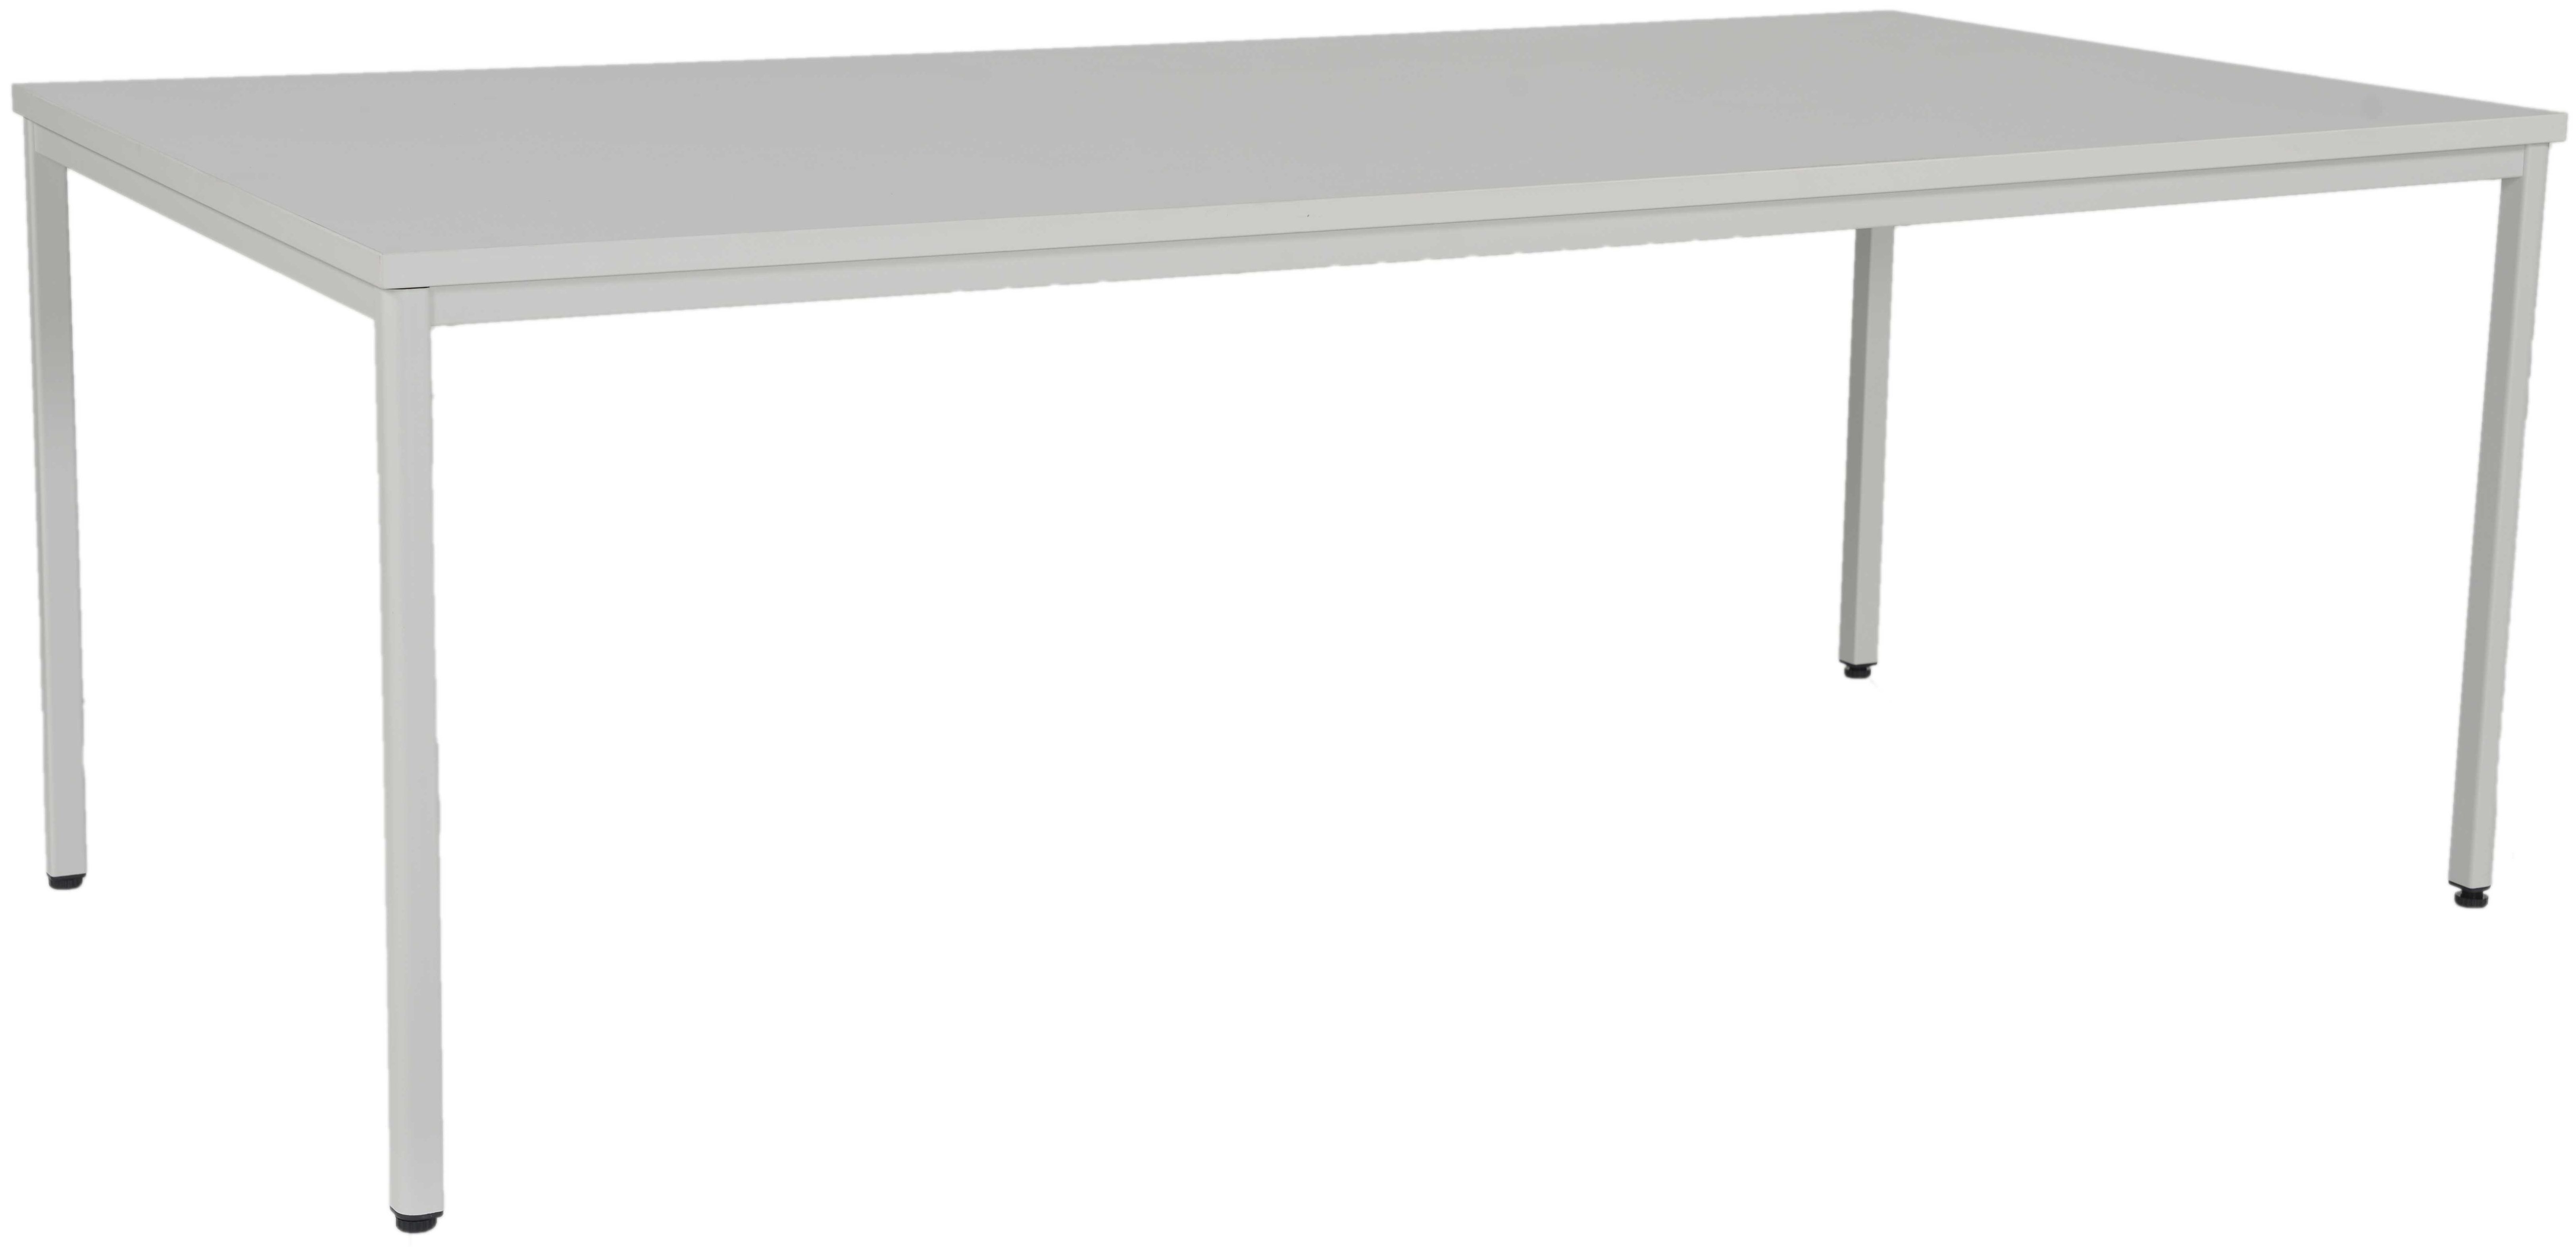 EDGY Table de bureau NG300 200x100x75cm, gris